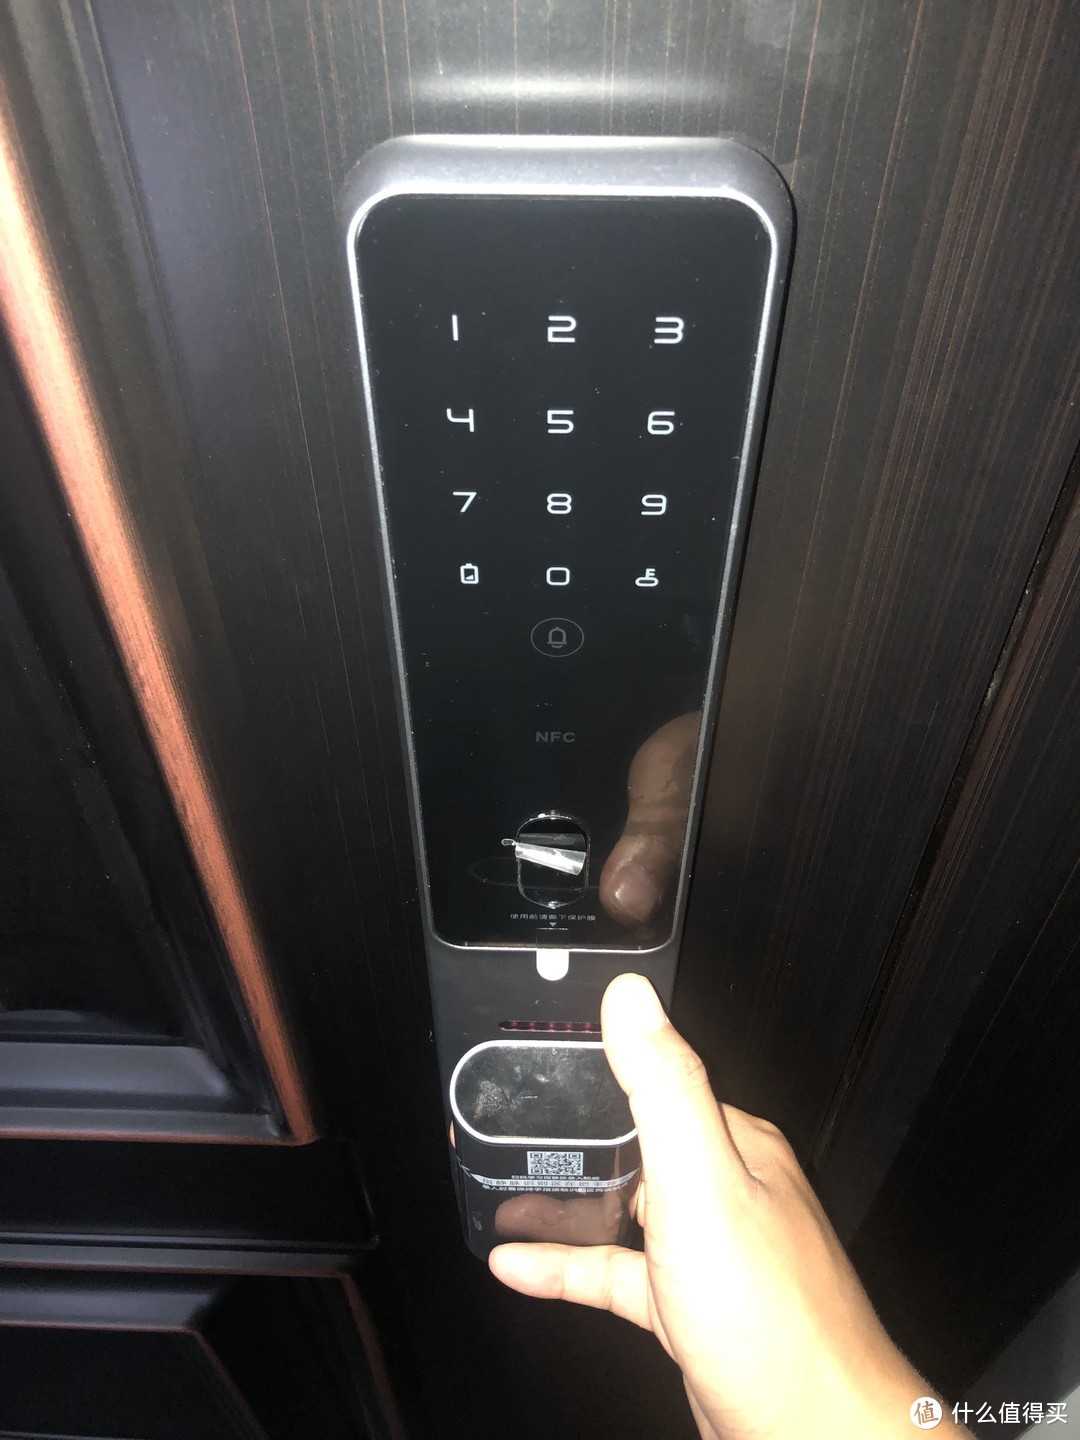 此款智能锁带门铃，轻触门铃图标后，屋内会有声音提示